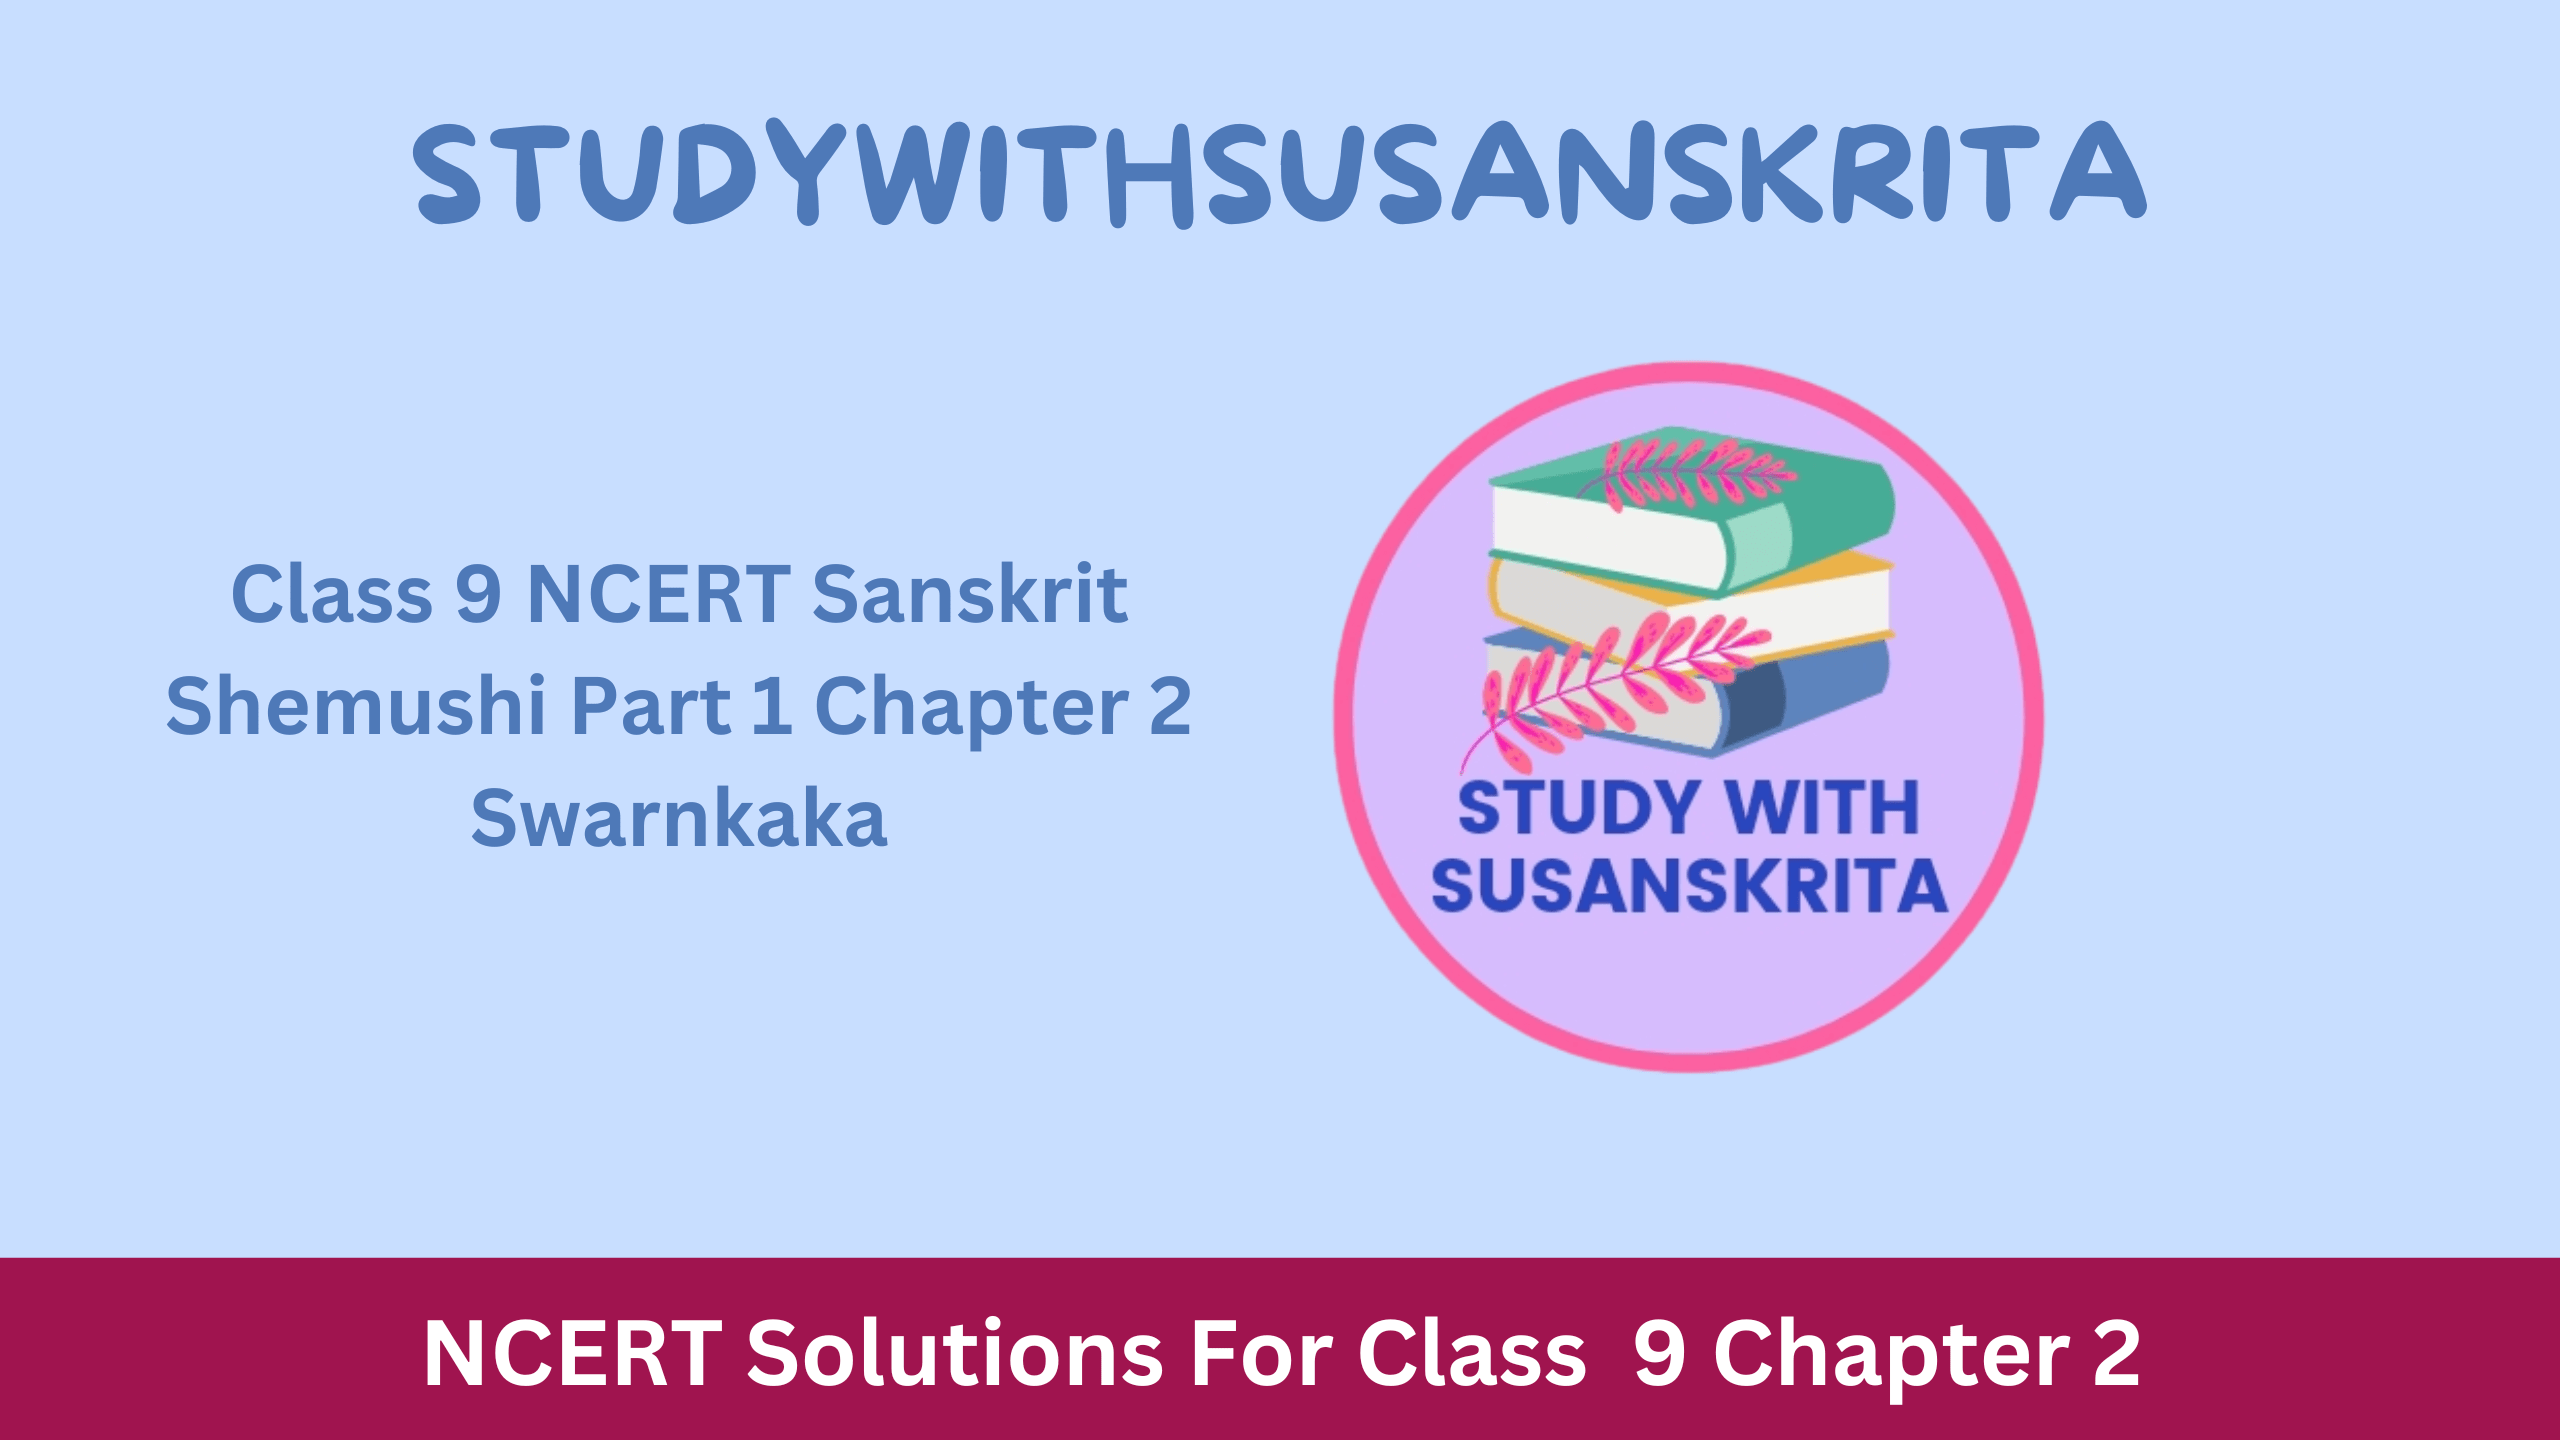 Class 9 NCERT Sanskrit Shemushi Part 1 Chapter 2 Swarnkaka